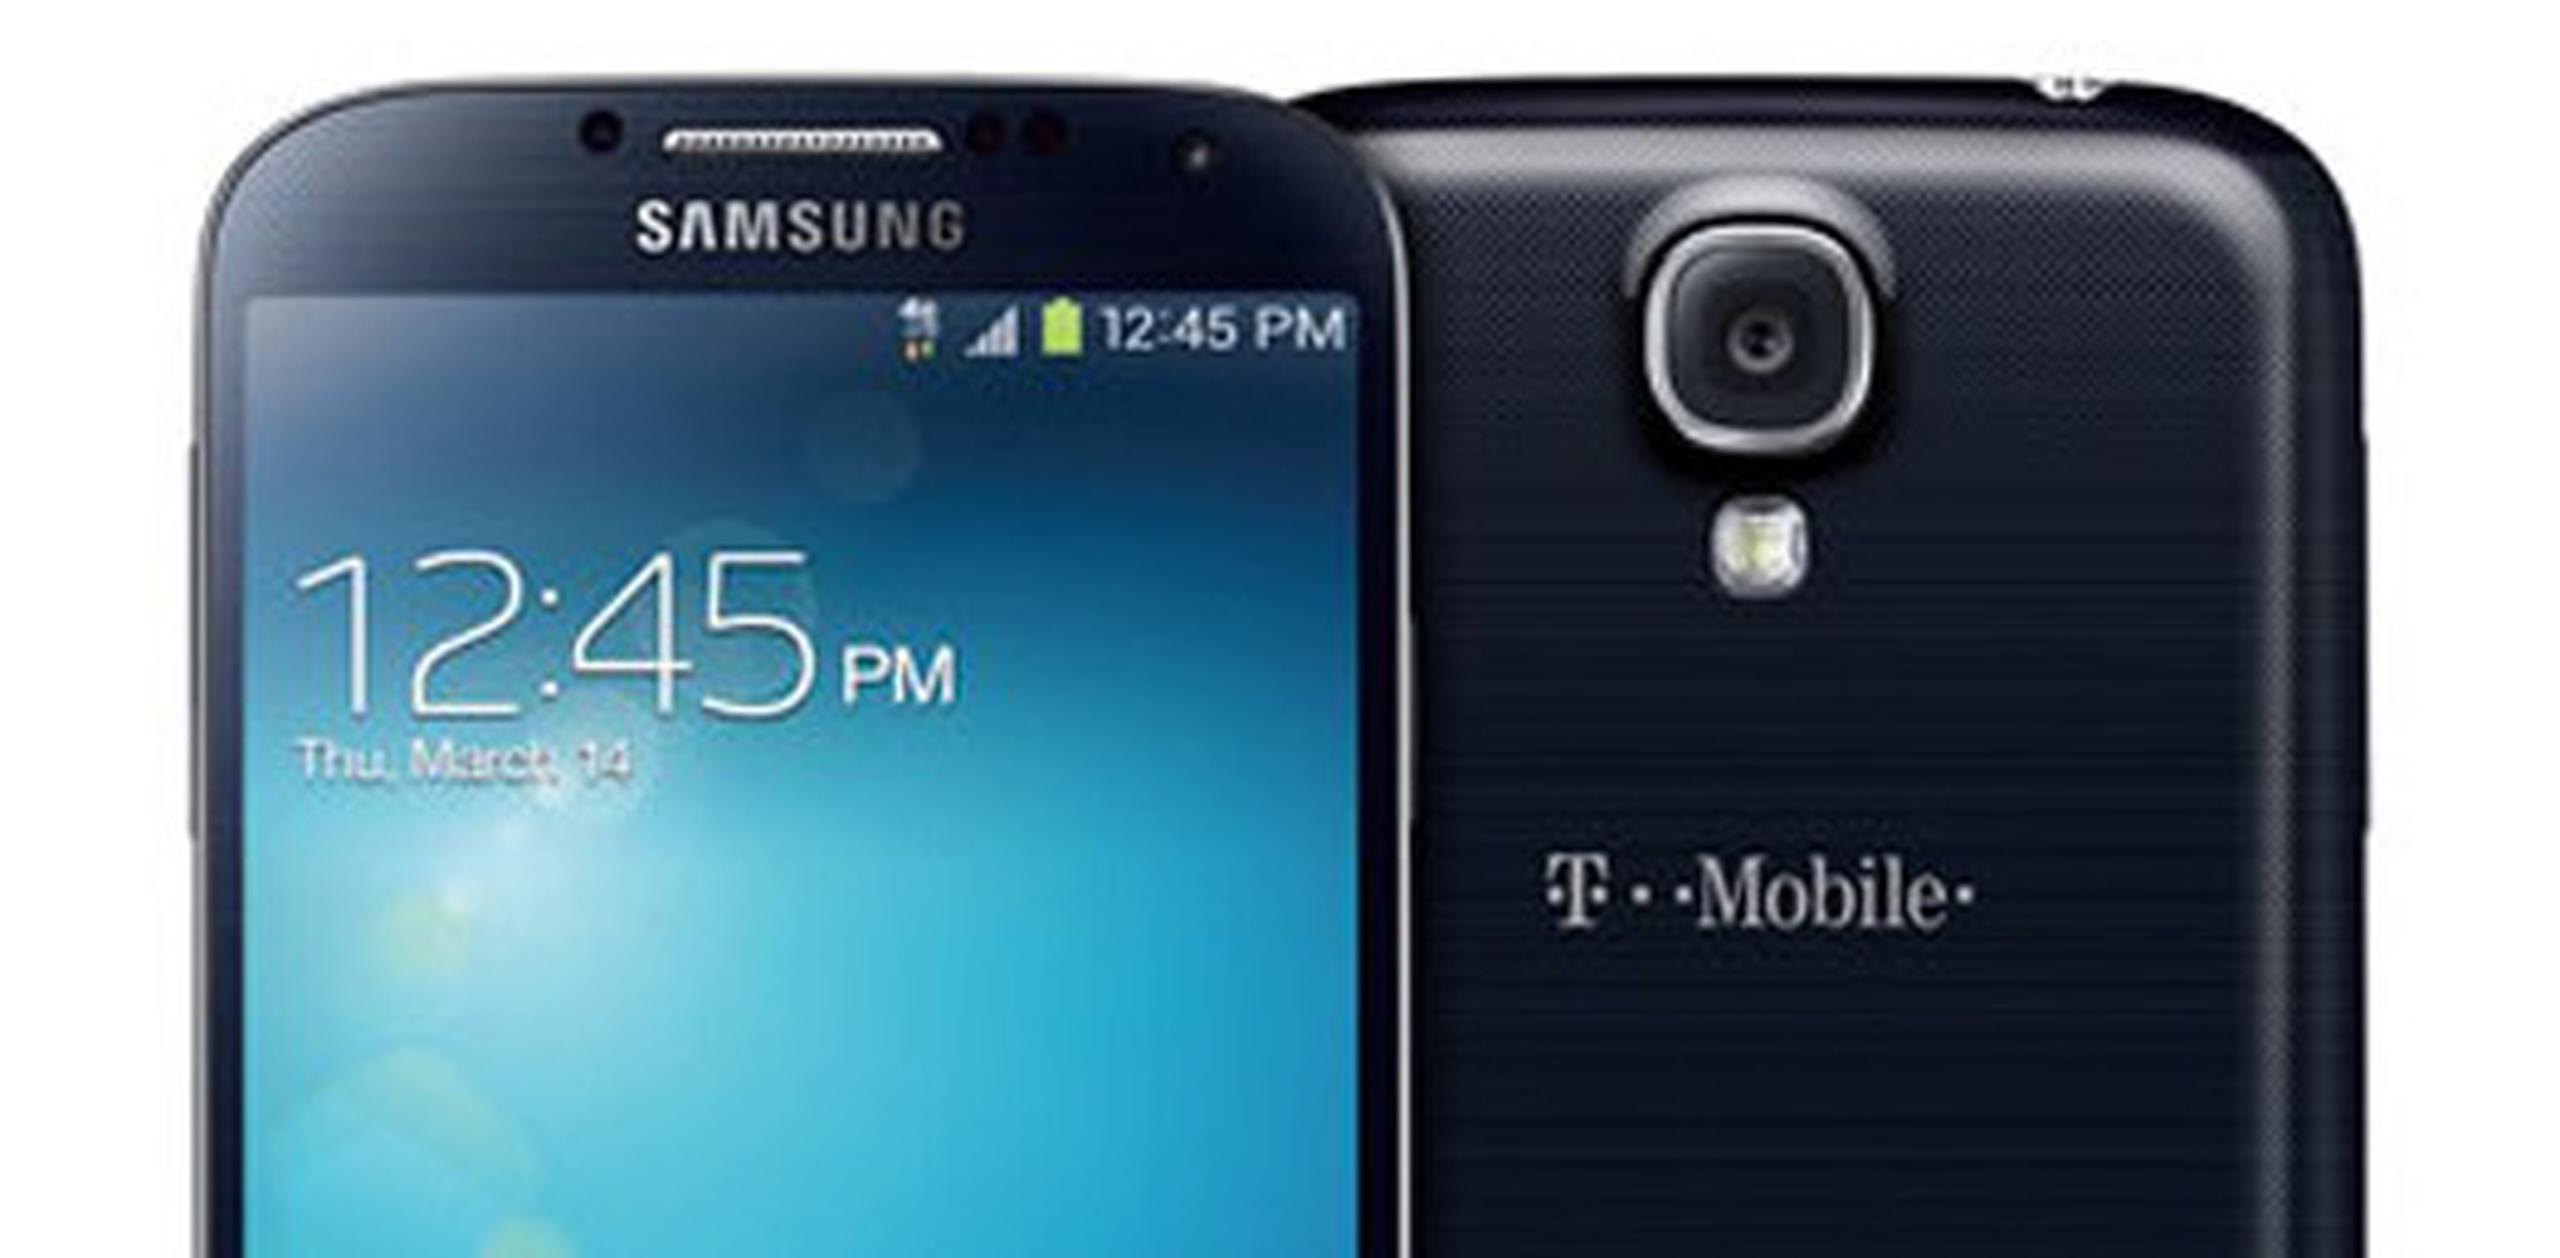 El Samsung S4 estará disponible en gris titanio y blanco. (Suministrada)